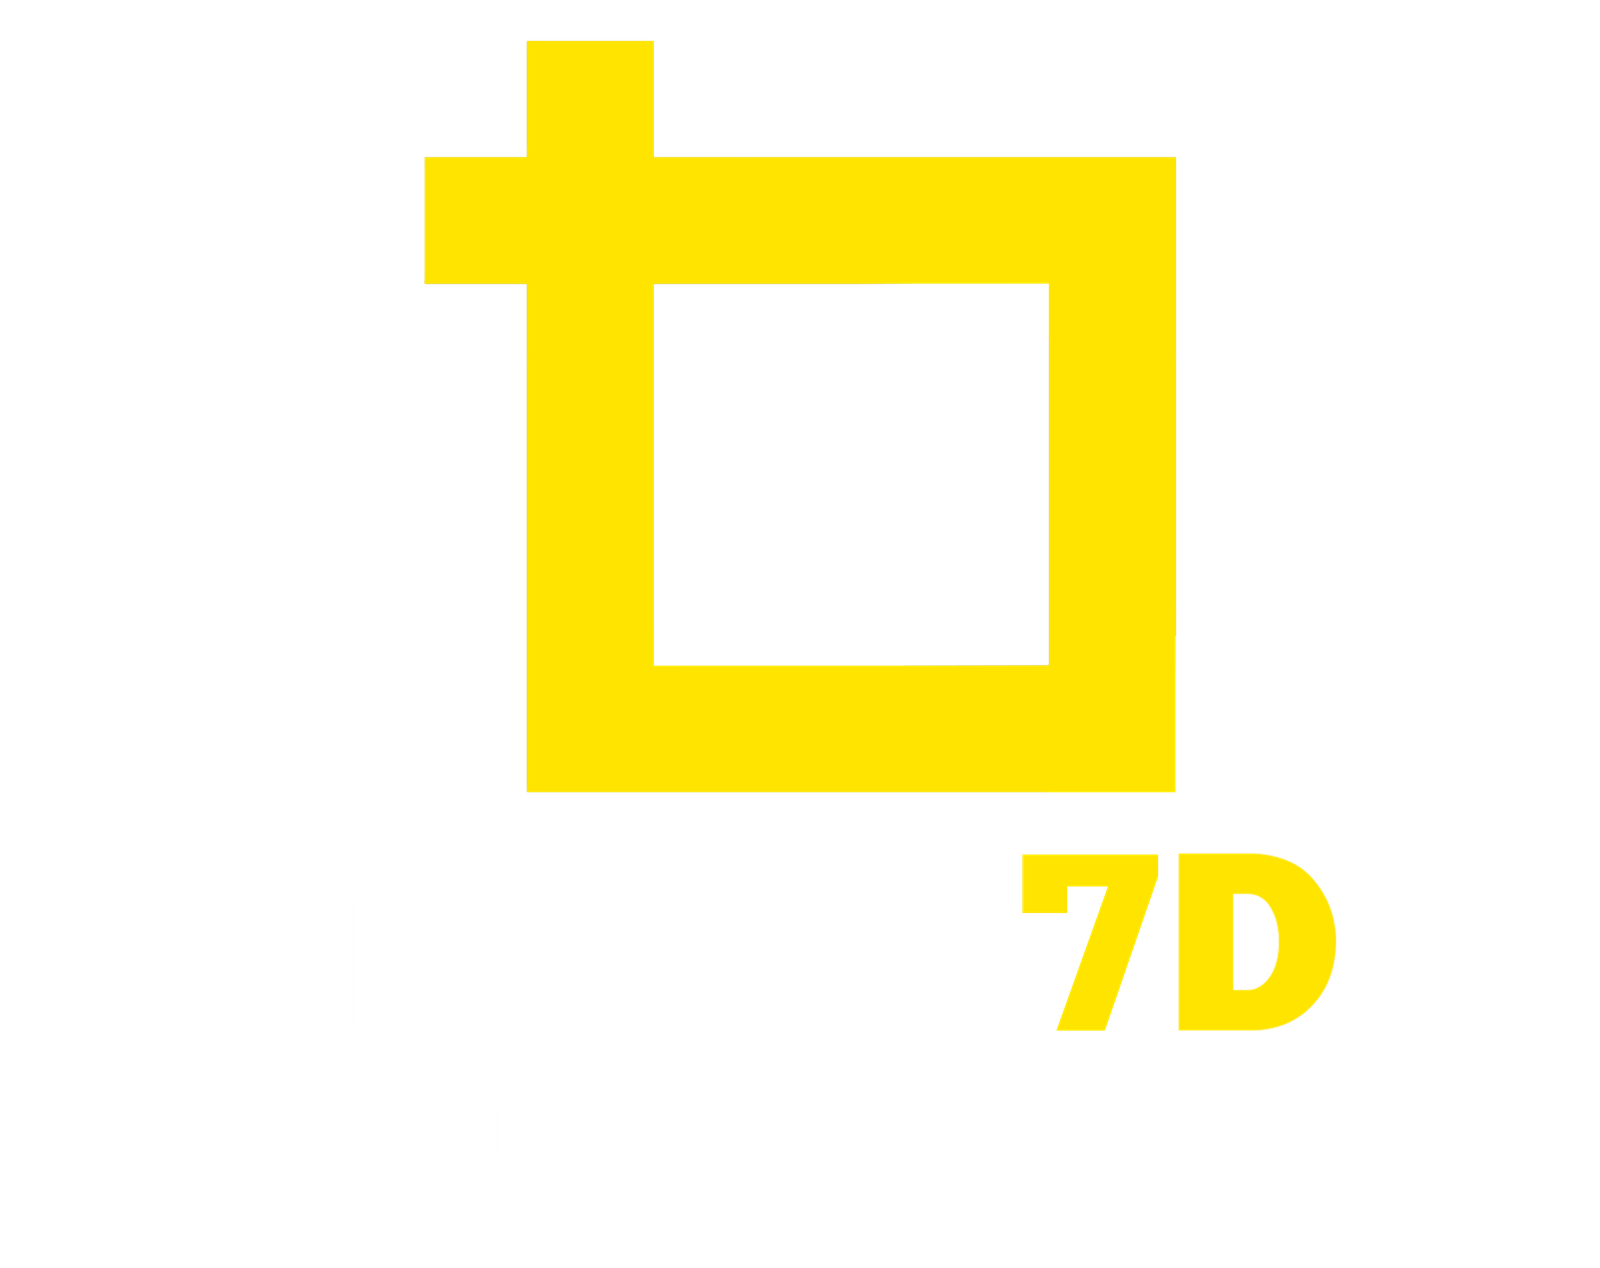 D7 or 7D lettermark logo. 31975616 Vector Art at Vecteezy